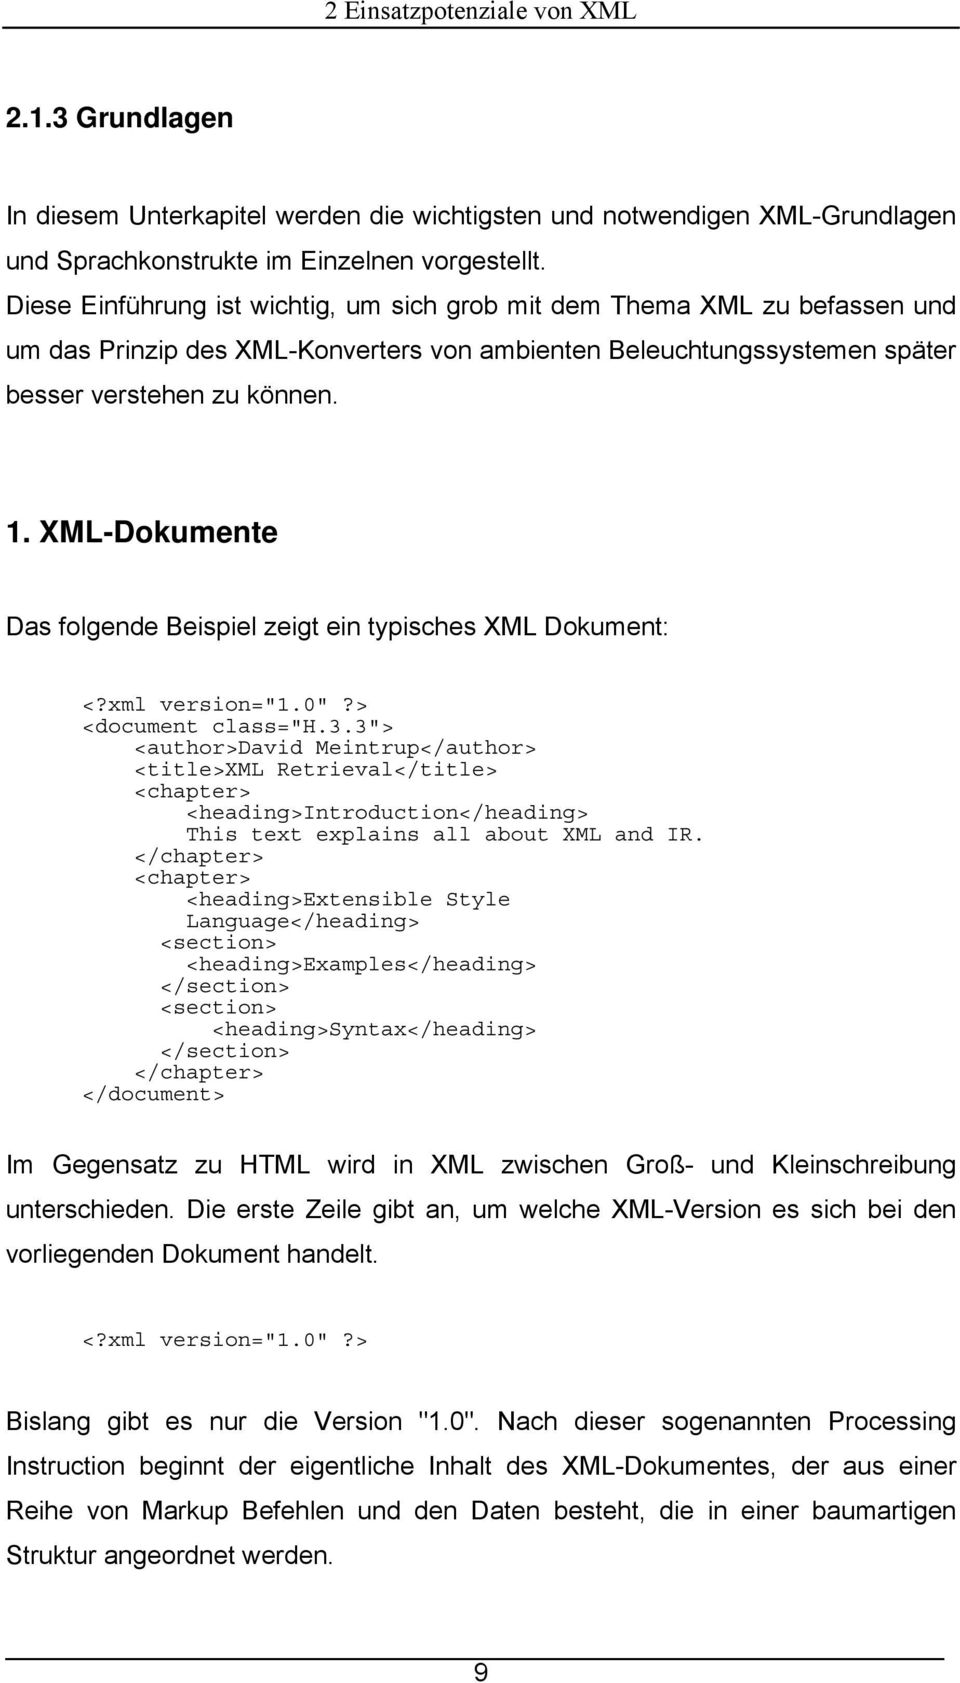 XML-Dokumente Das folgende Beispiel zeigt ein typisches XML Dokument: <?xml version="1.0"?> <document class="h.3.